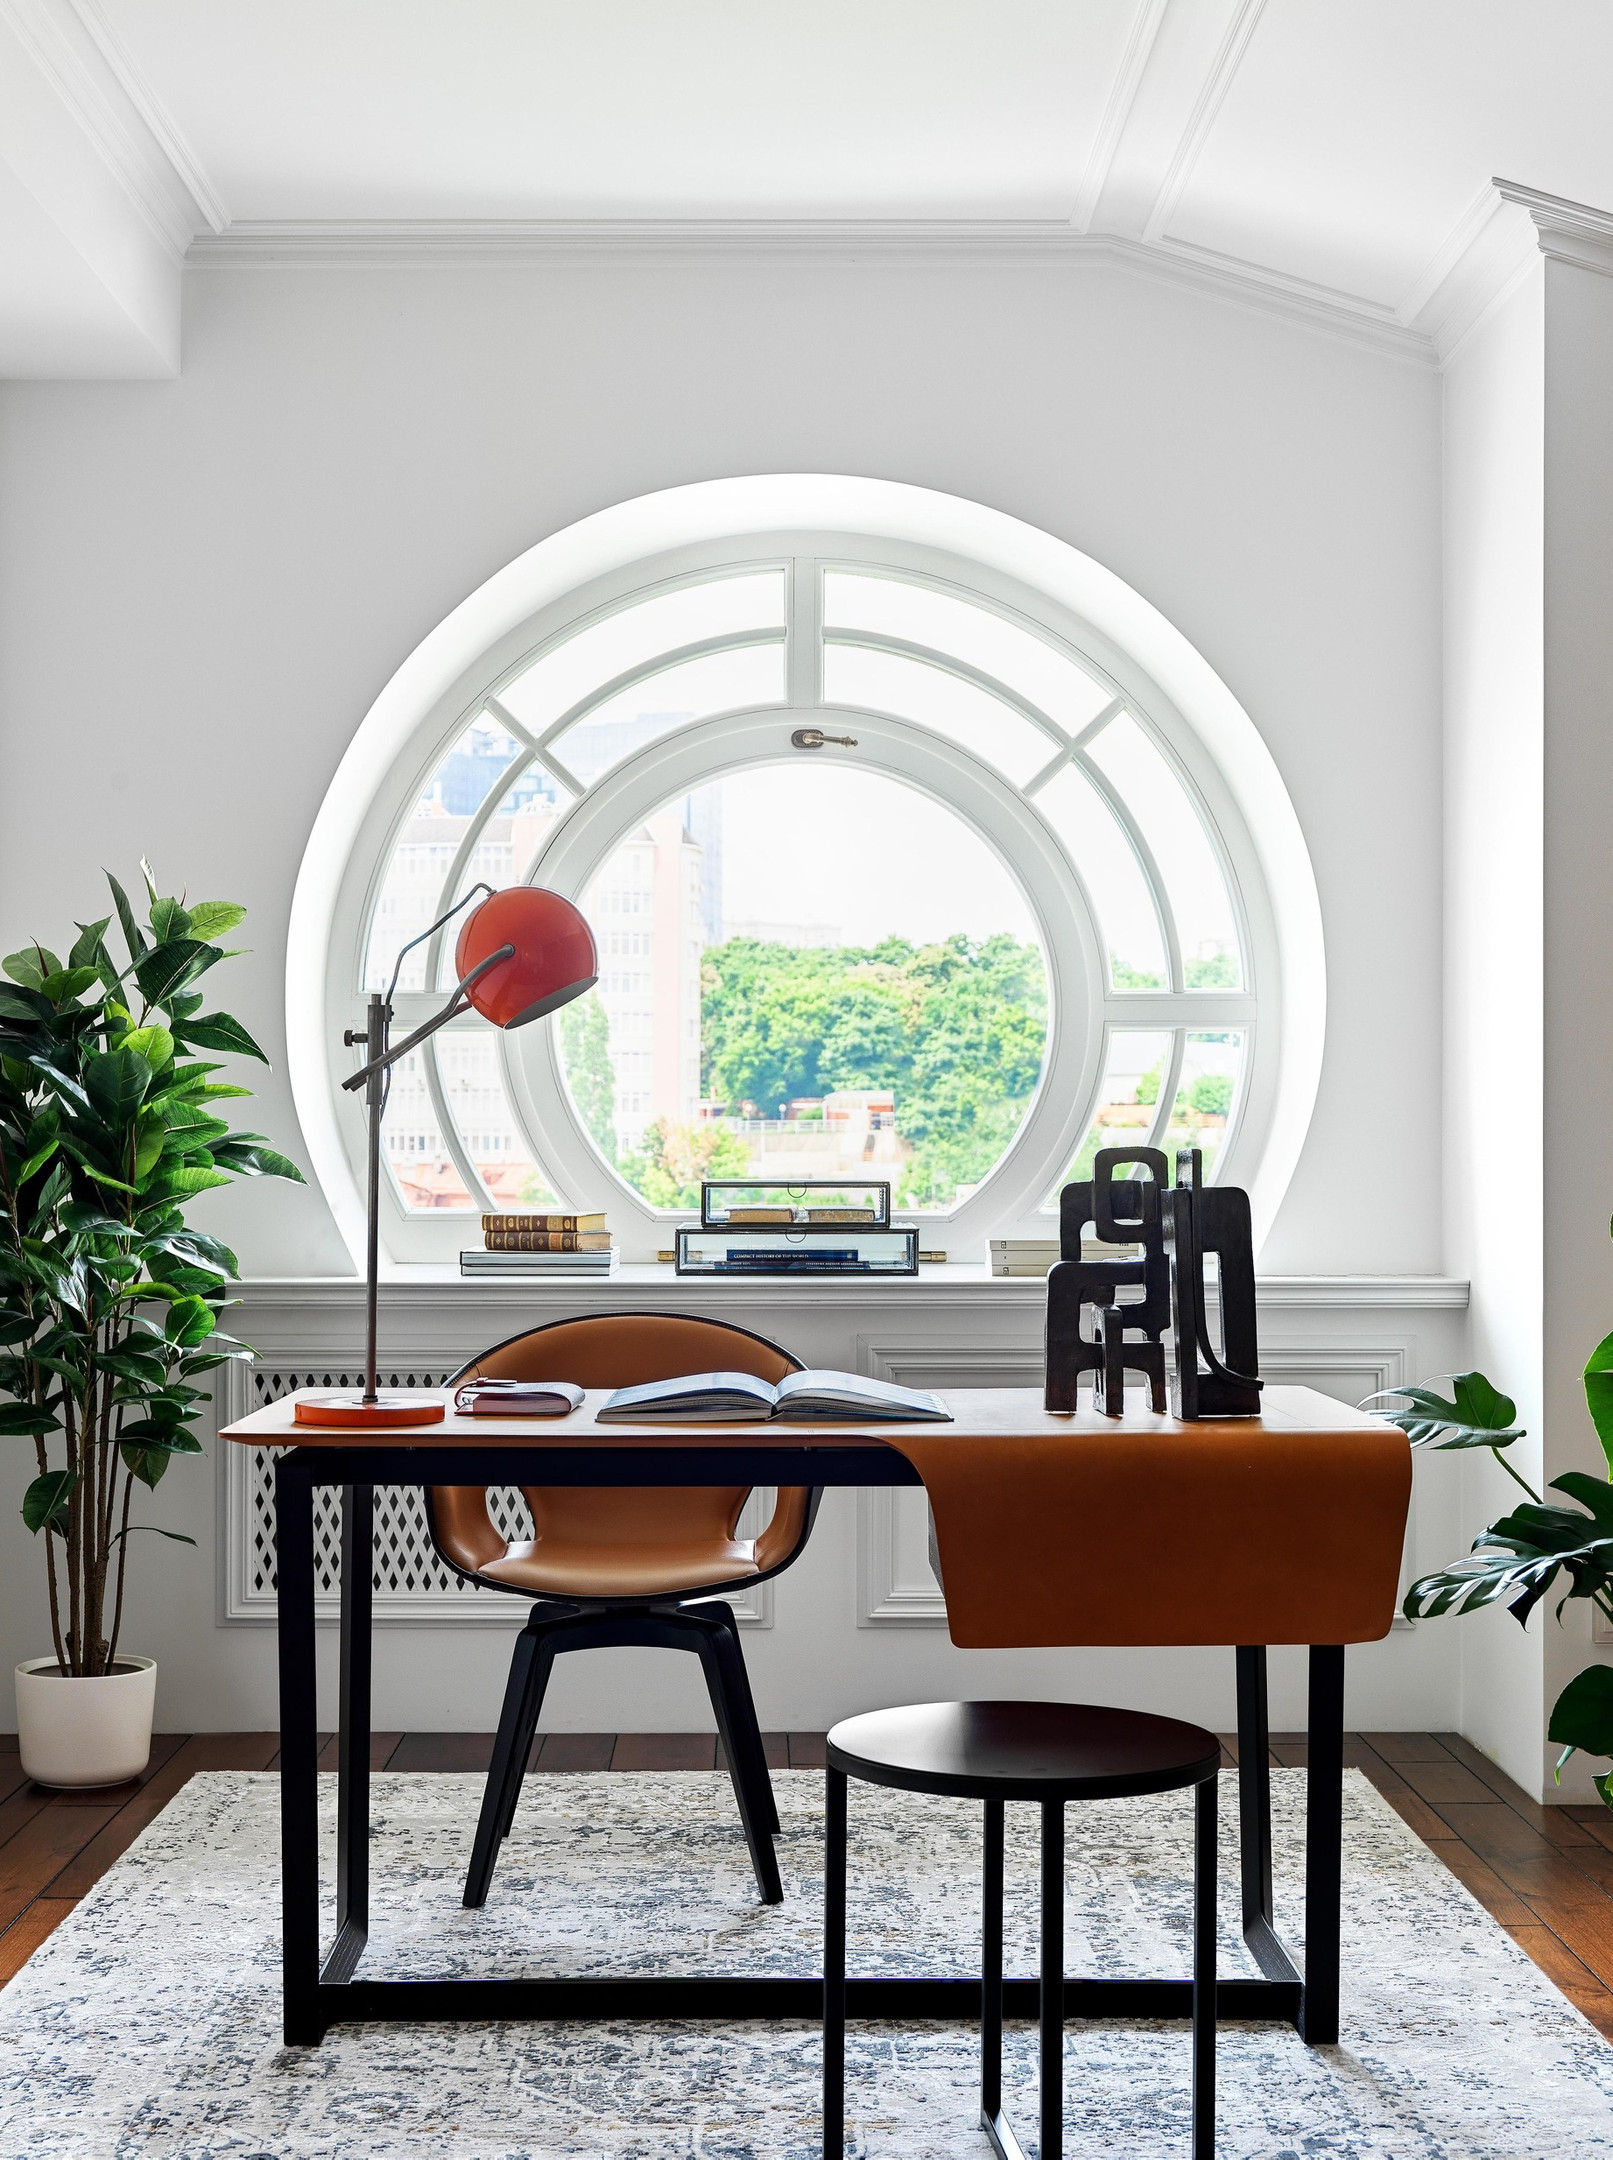 Phòng làm việc siêu đẹp với ô của hình tròn nhìn ra không gian bên ngoài tràn đầy cảm hứng. Bàn làm việc và ghế bành từ thương hiệu Poltrona Frau (Ý), chiếc đèn bàn cổ do Đức sản xuất từ những năm 60. Tất cả đều có màu cam gạch “tone sur tone” nổi bật.